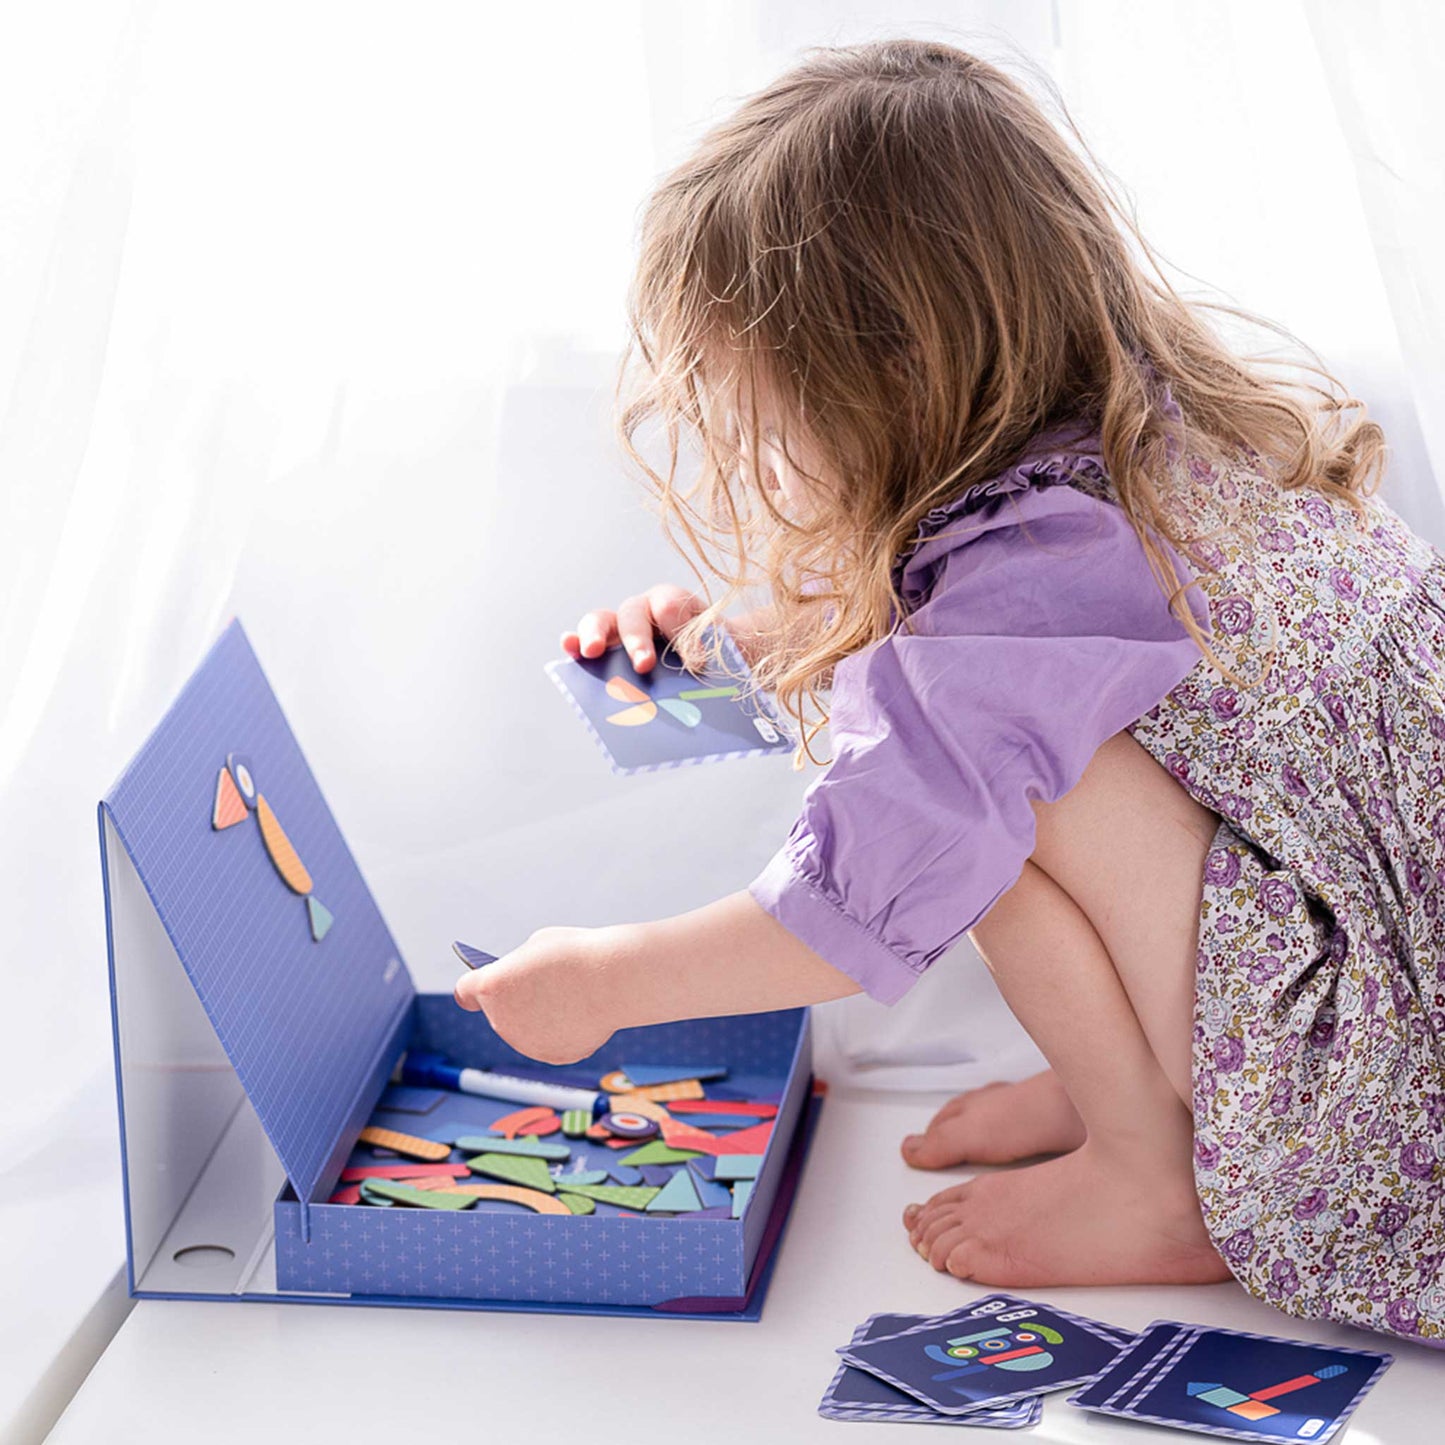 mierEdu,Kreative Magnetspiel Box,Formen, Foerdert Motorik, kognitive Faehigkeiten, Fantasie,Ideal für Zuhause und als Reisespiel für Kinder